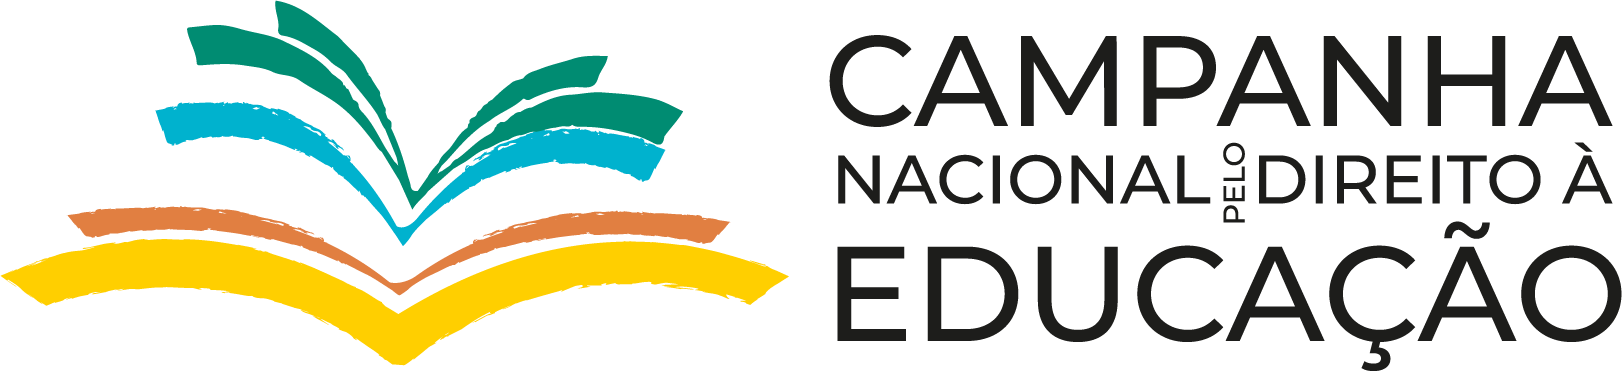 CAMPANHA NACIONAL PELO DIREITO À EDUCAÇÃO DO BRASIL